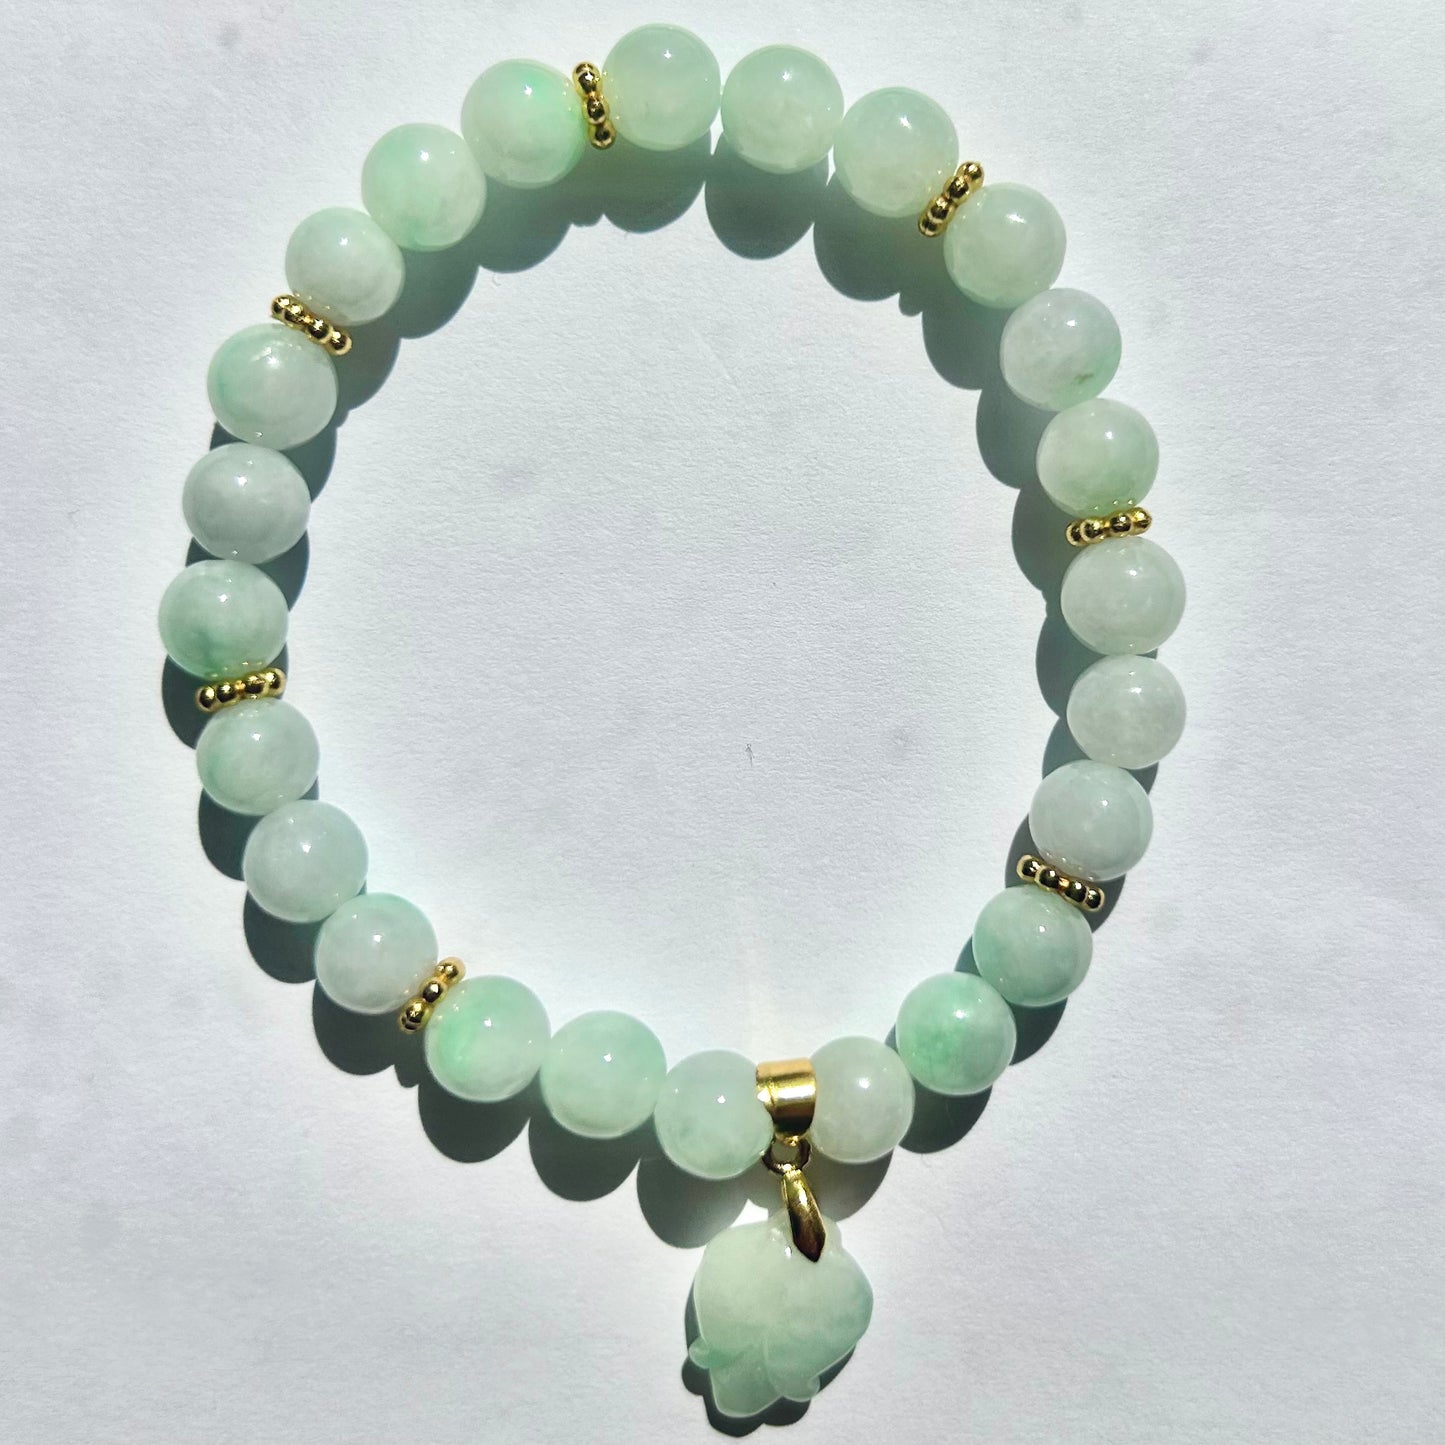 100% Untreated Genuine Type A Burmese Jadeite Bracelet, White Base with Floating Sunny Green Color Myanmar Jadeite Bracelet, 7+mm, Handmade in Canada|天然缅甸白底青飘阳绿翡翠圆珠手串